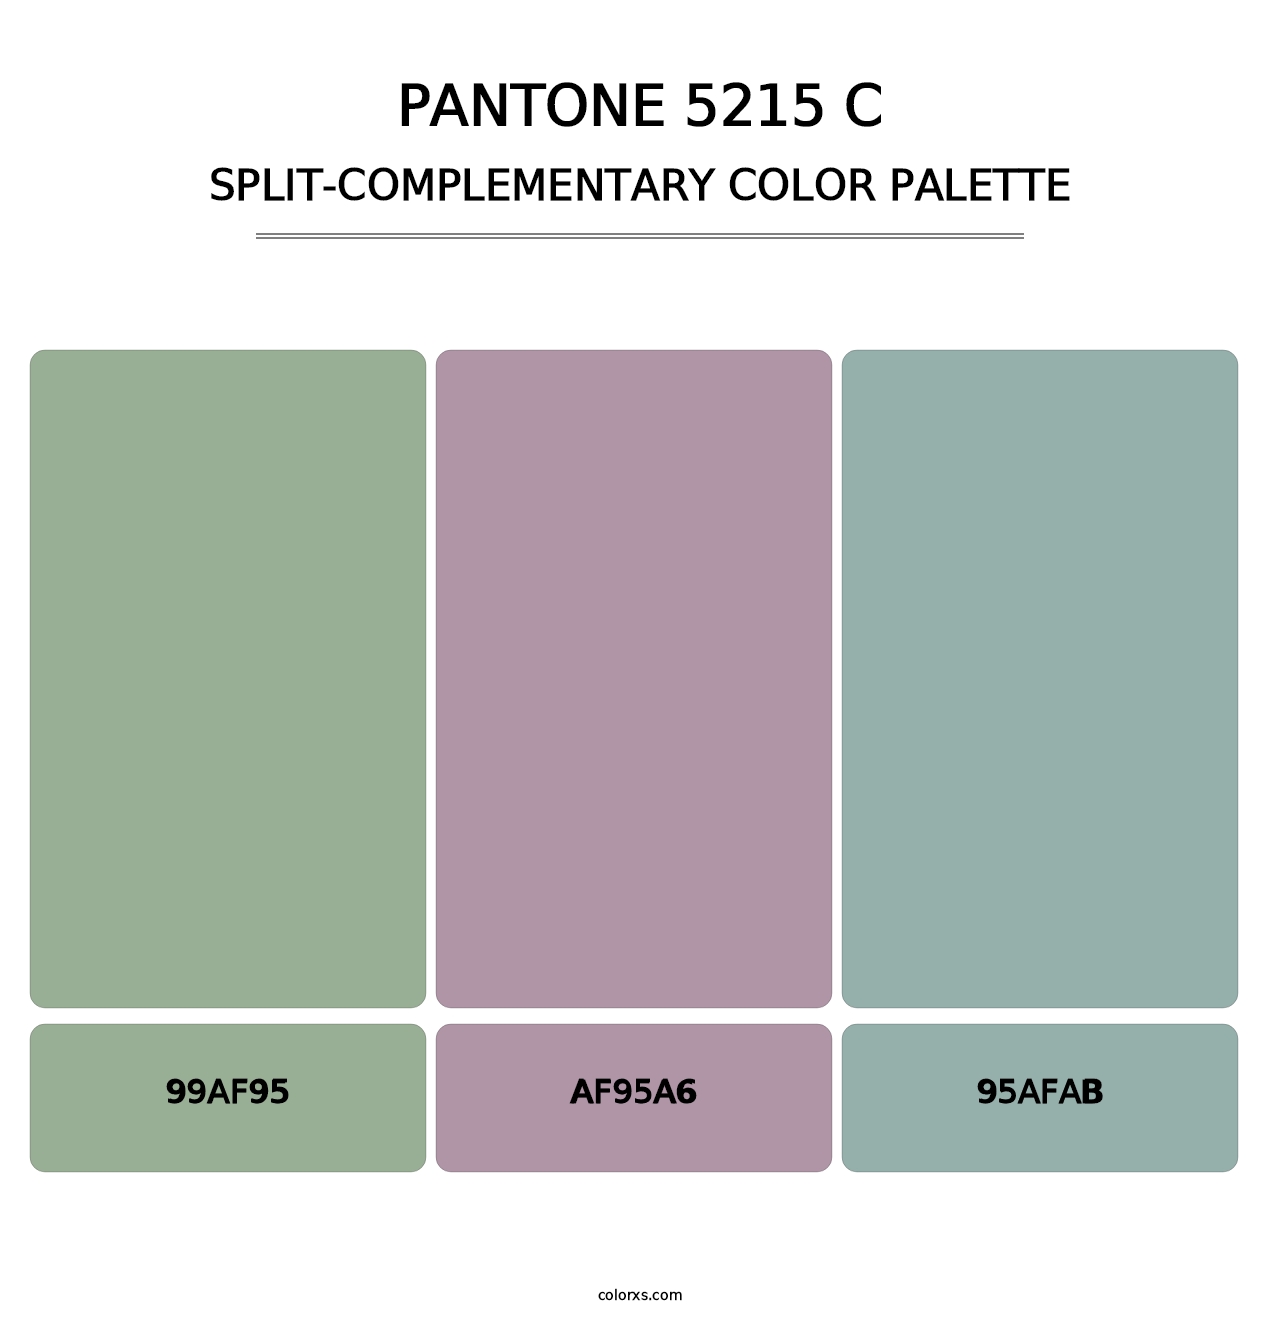 PANTONE 5215 C - Split-Complementary Color Palette